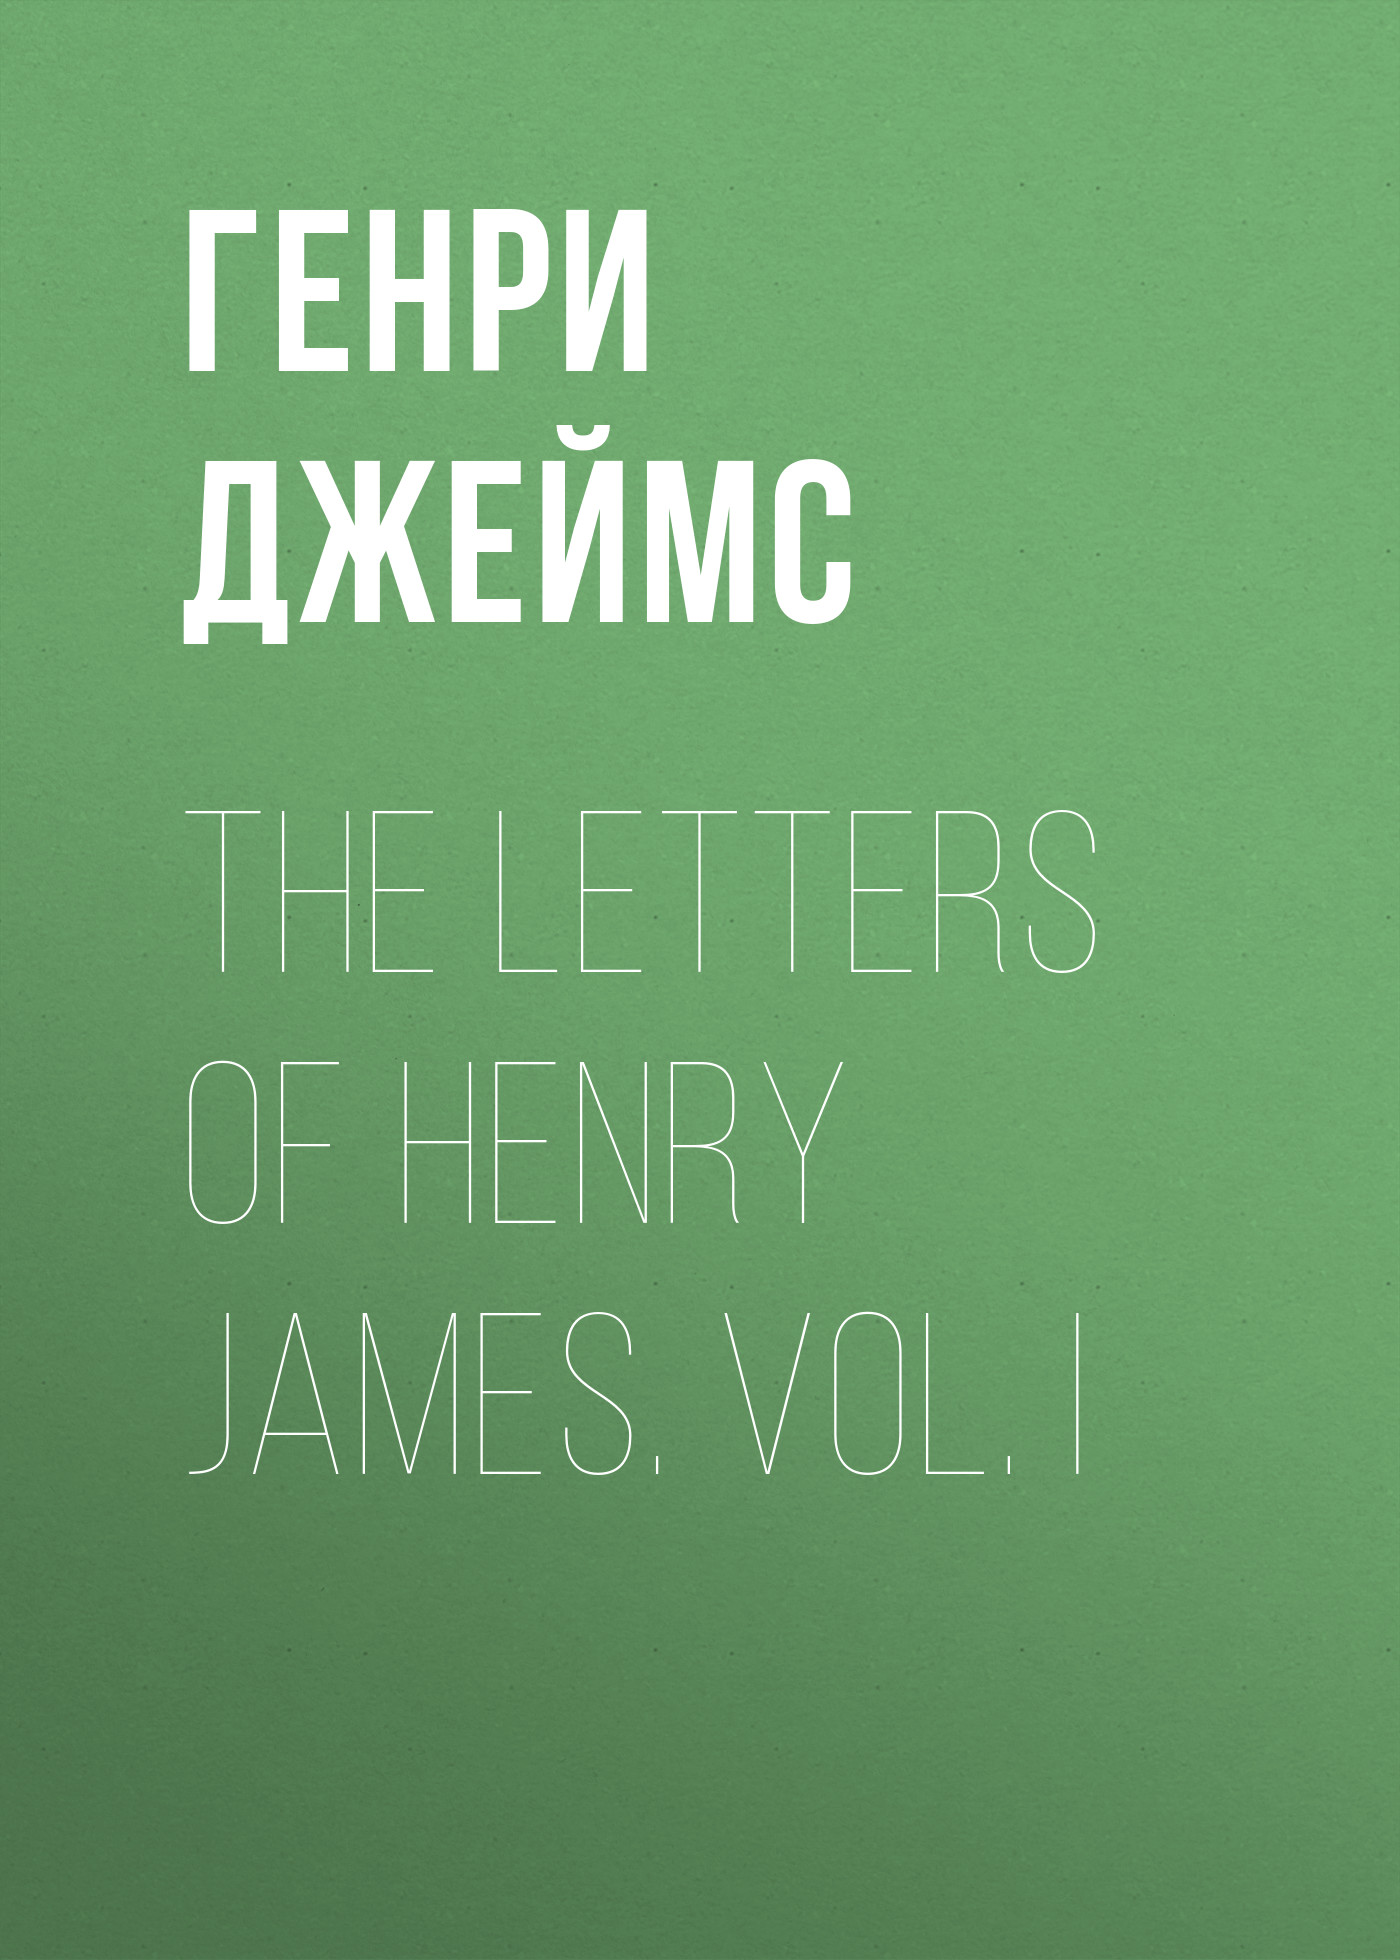 Книга The Letters of Henry James. Vol. I из серии , созданная Генри Джеймс, может относится к жанру Биографии и Мемуары, Зарубежная старинная литература, Зарубежная классика. Стоимость электронной книги The Letters of Henry James. Vol. I с идентификатором 34839382 составляет 0 руб.